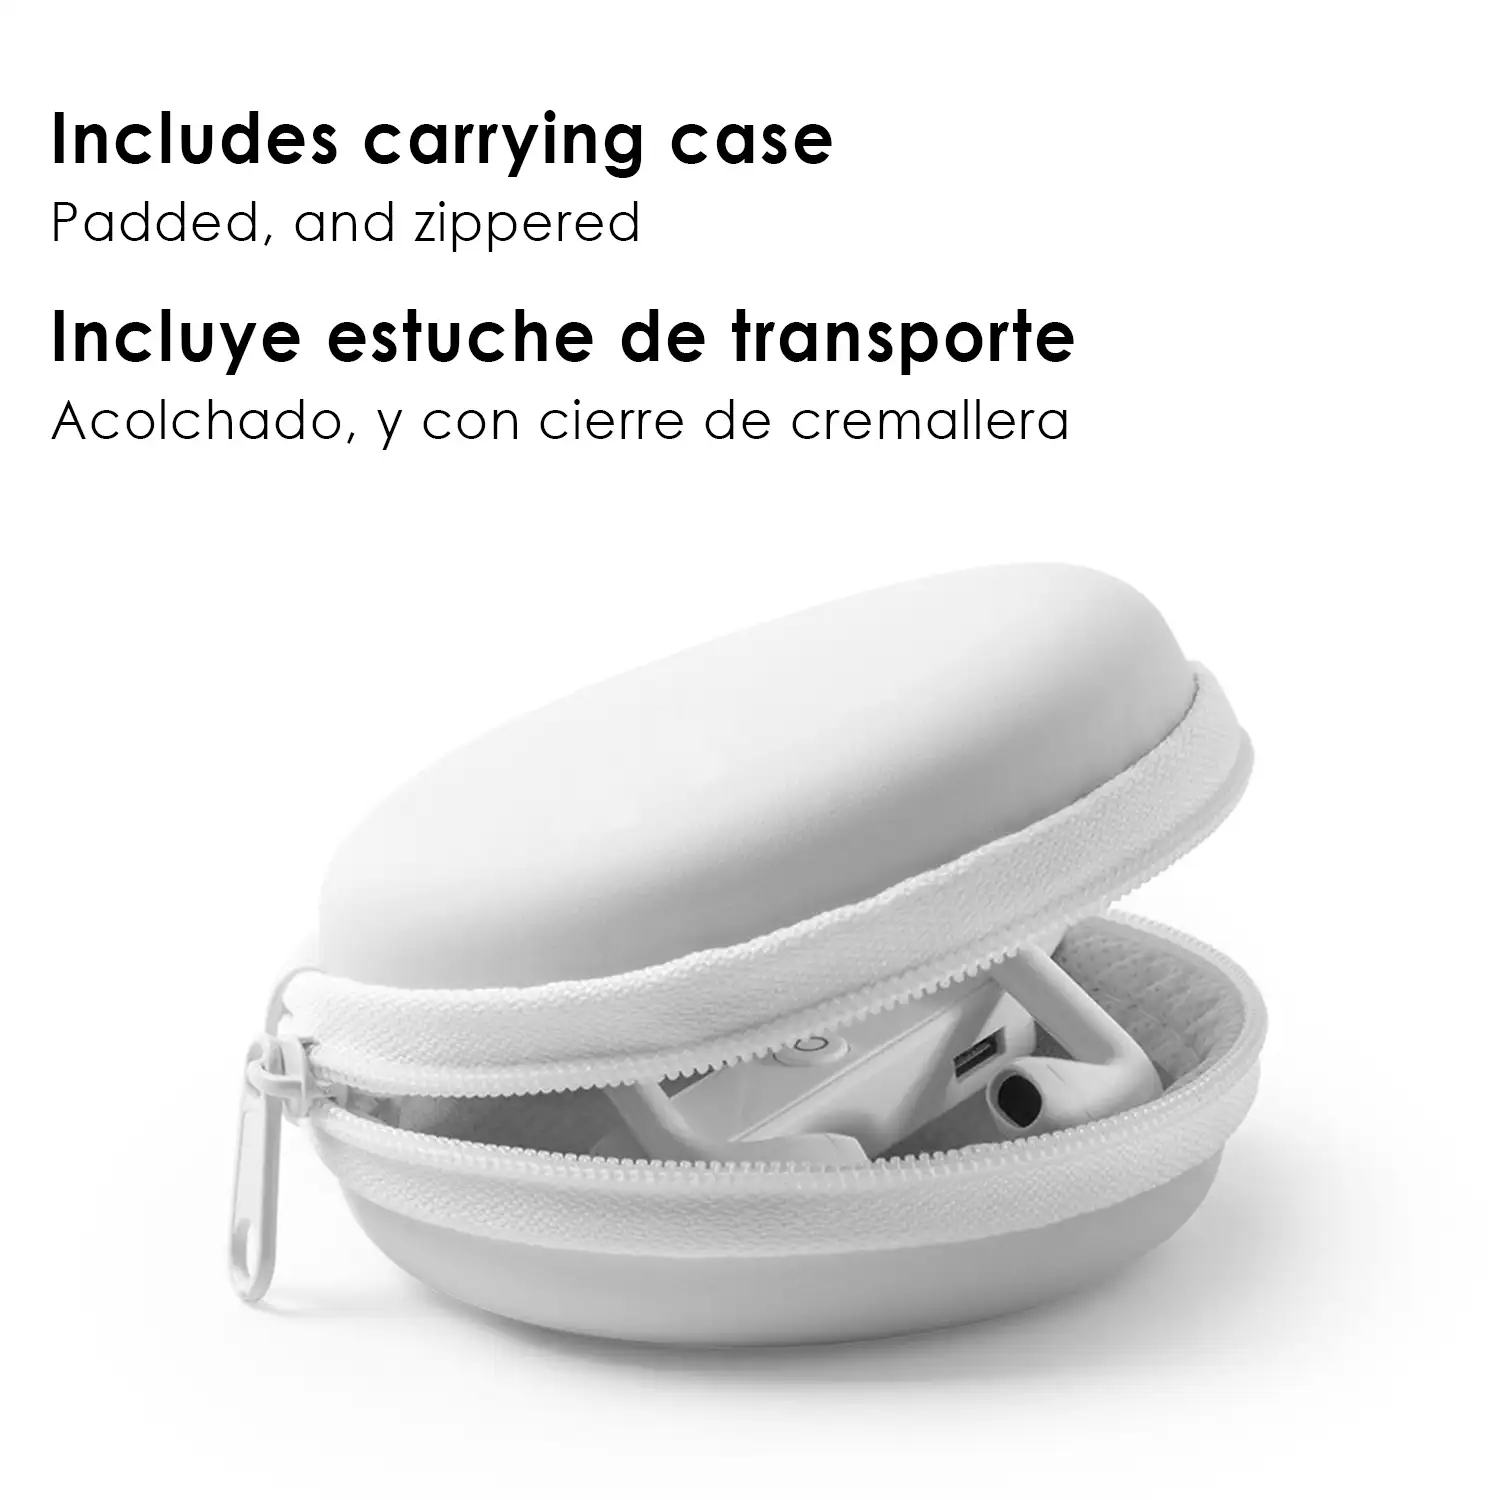 Auriculares intraurales con conexión Bluetooth 4.1. y estuche de transporte.